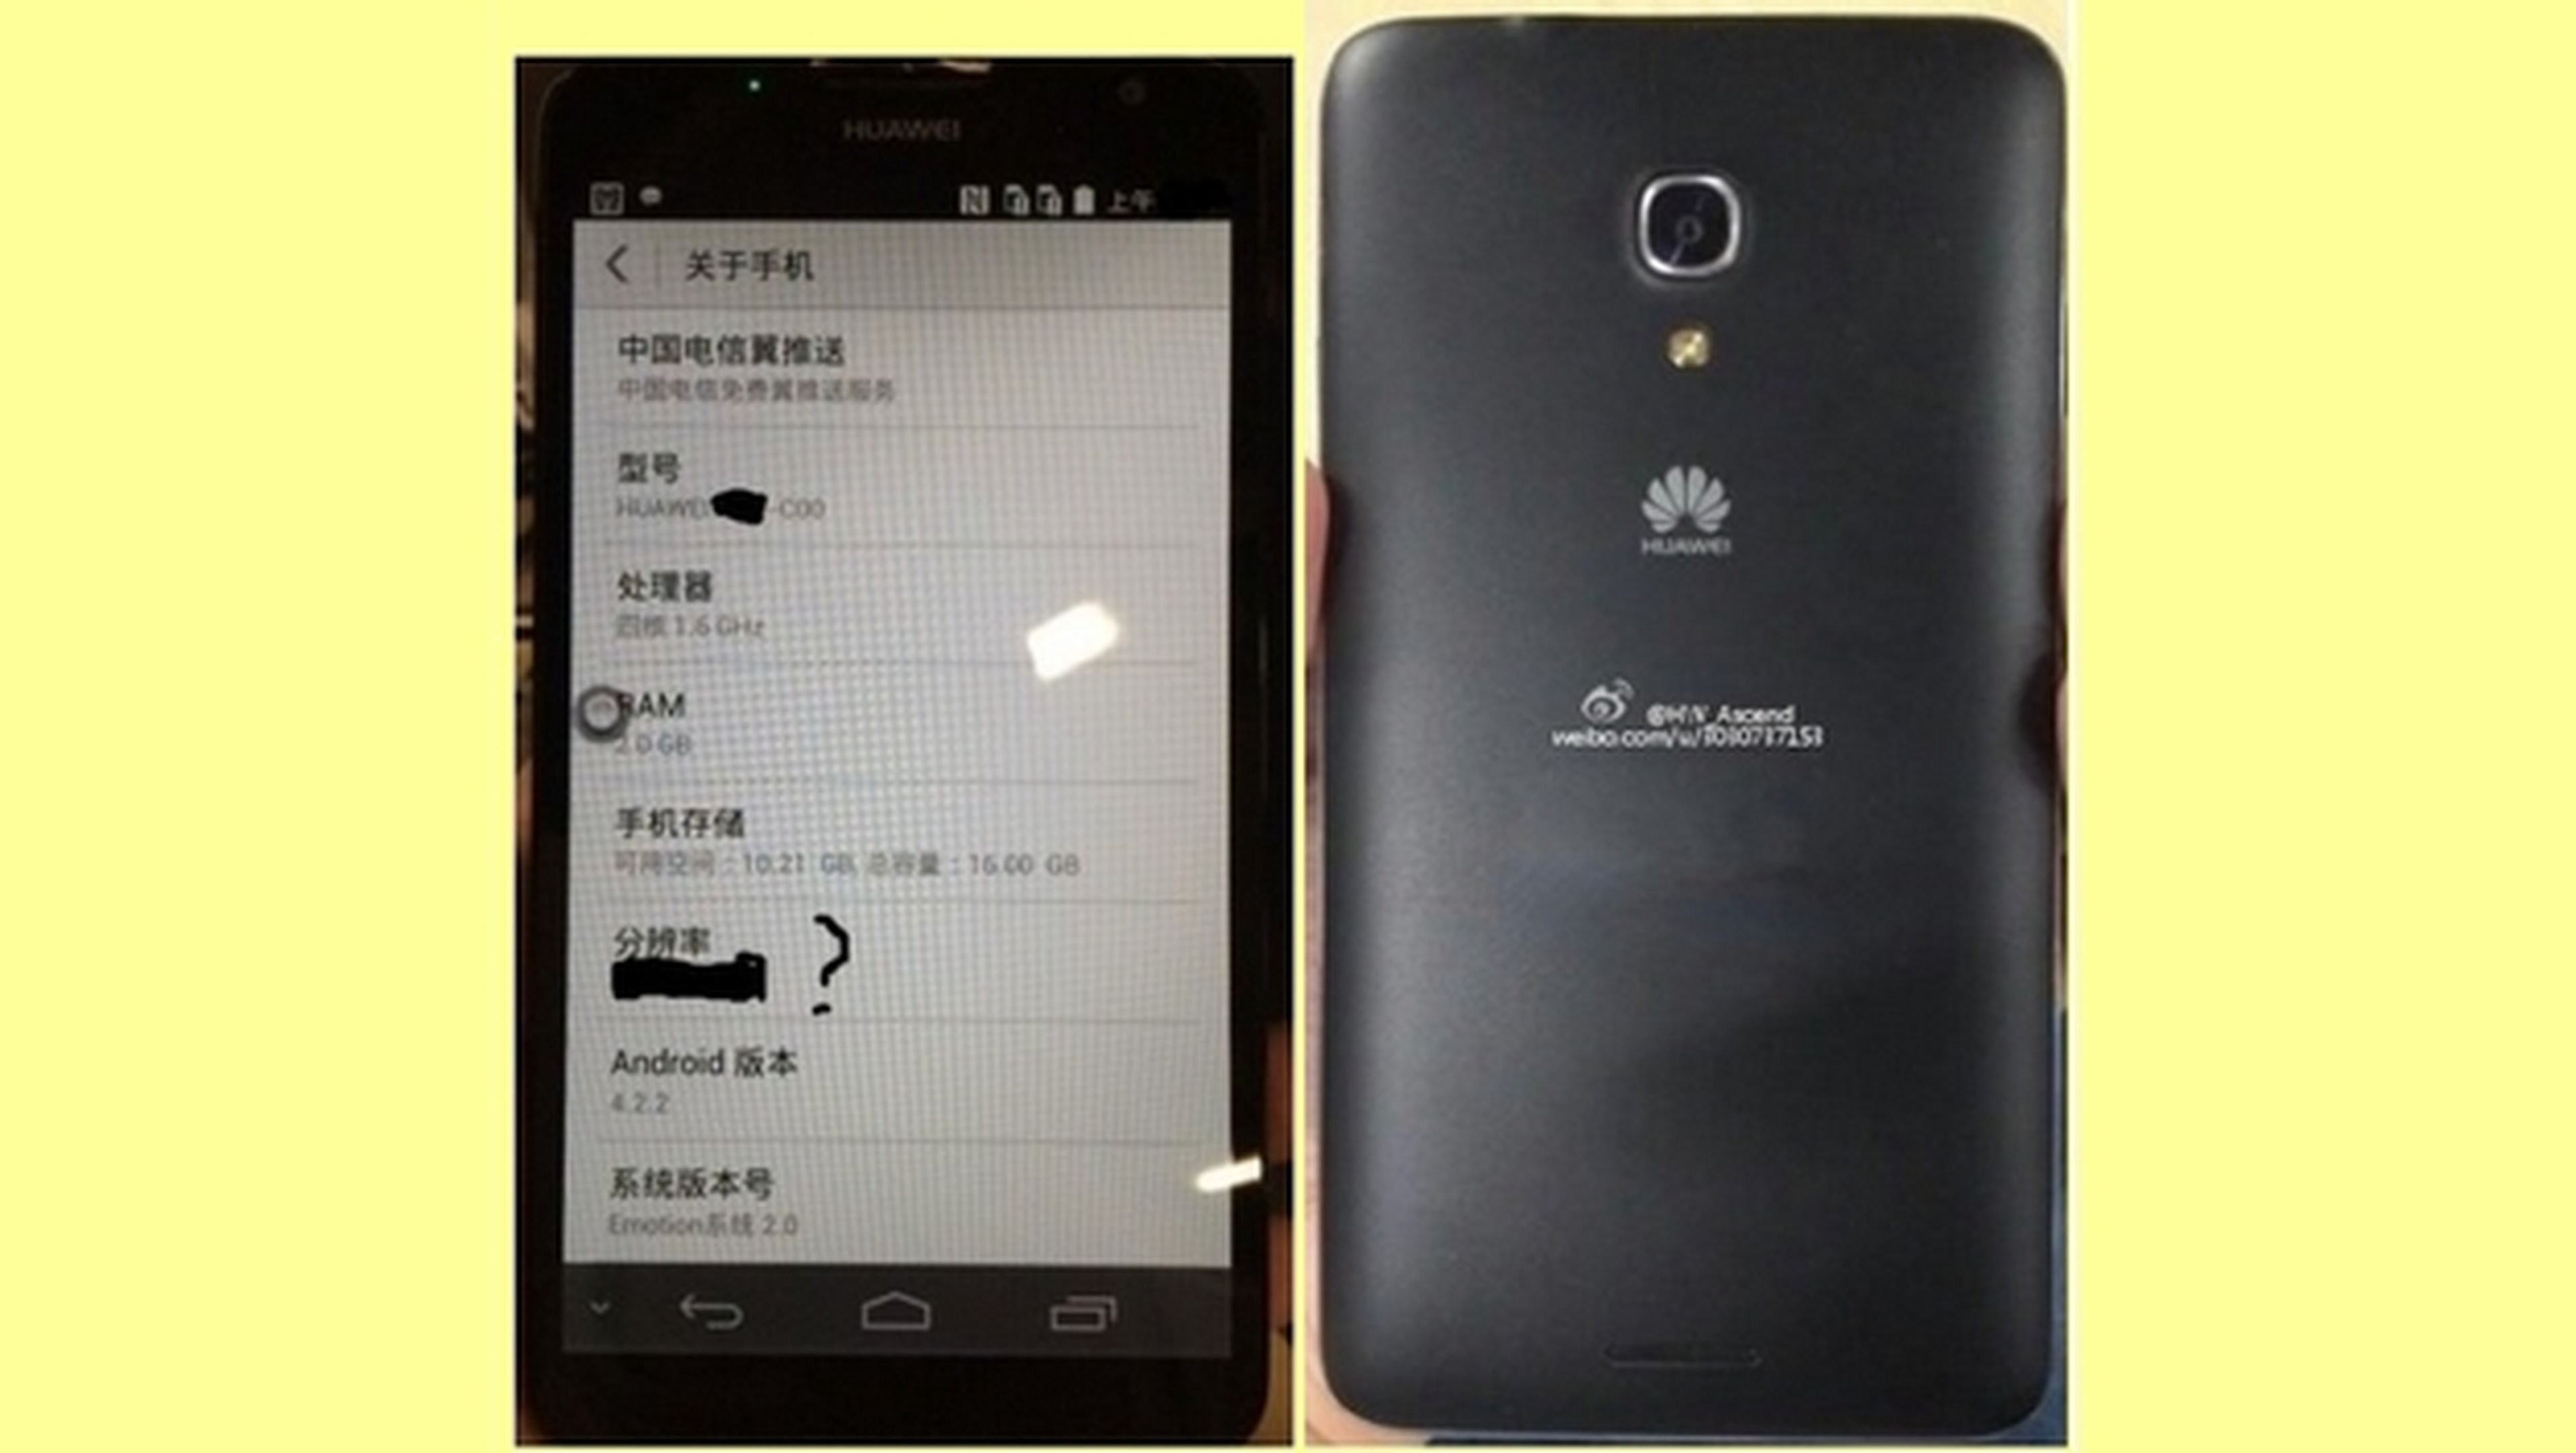 Primera foto y características del smartphone Huawei Ascend Mate 2